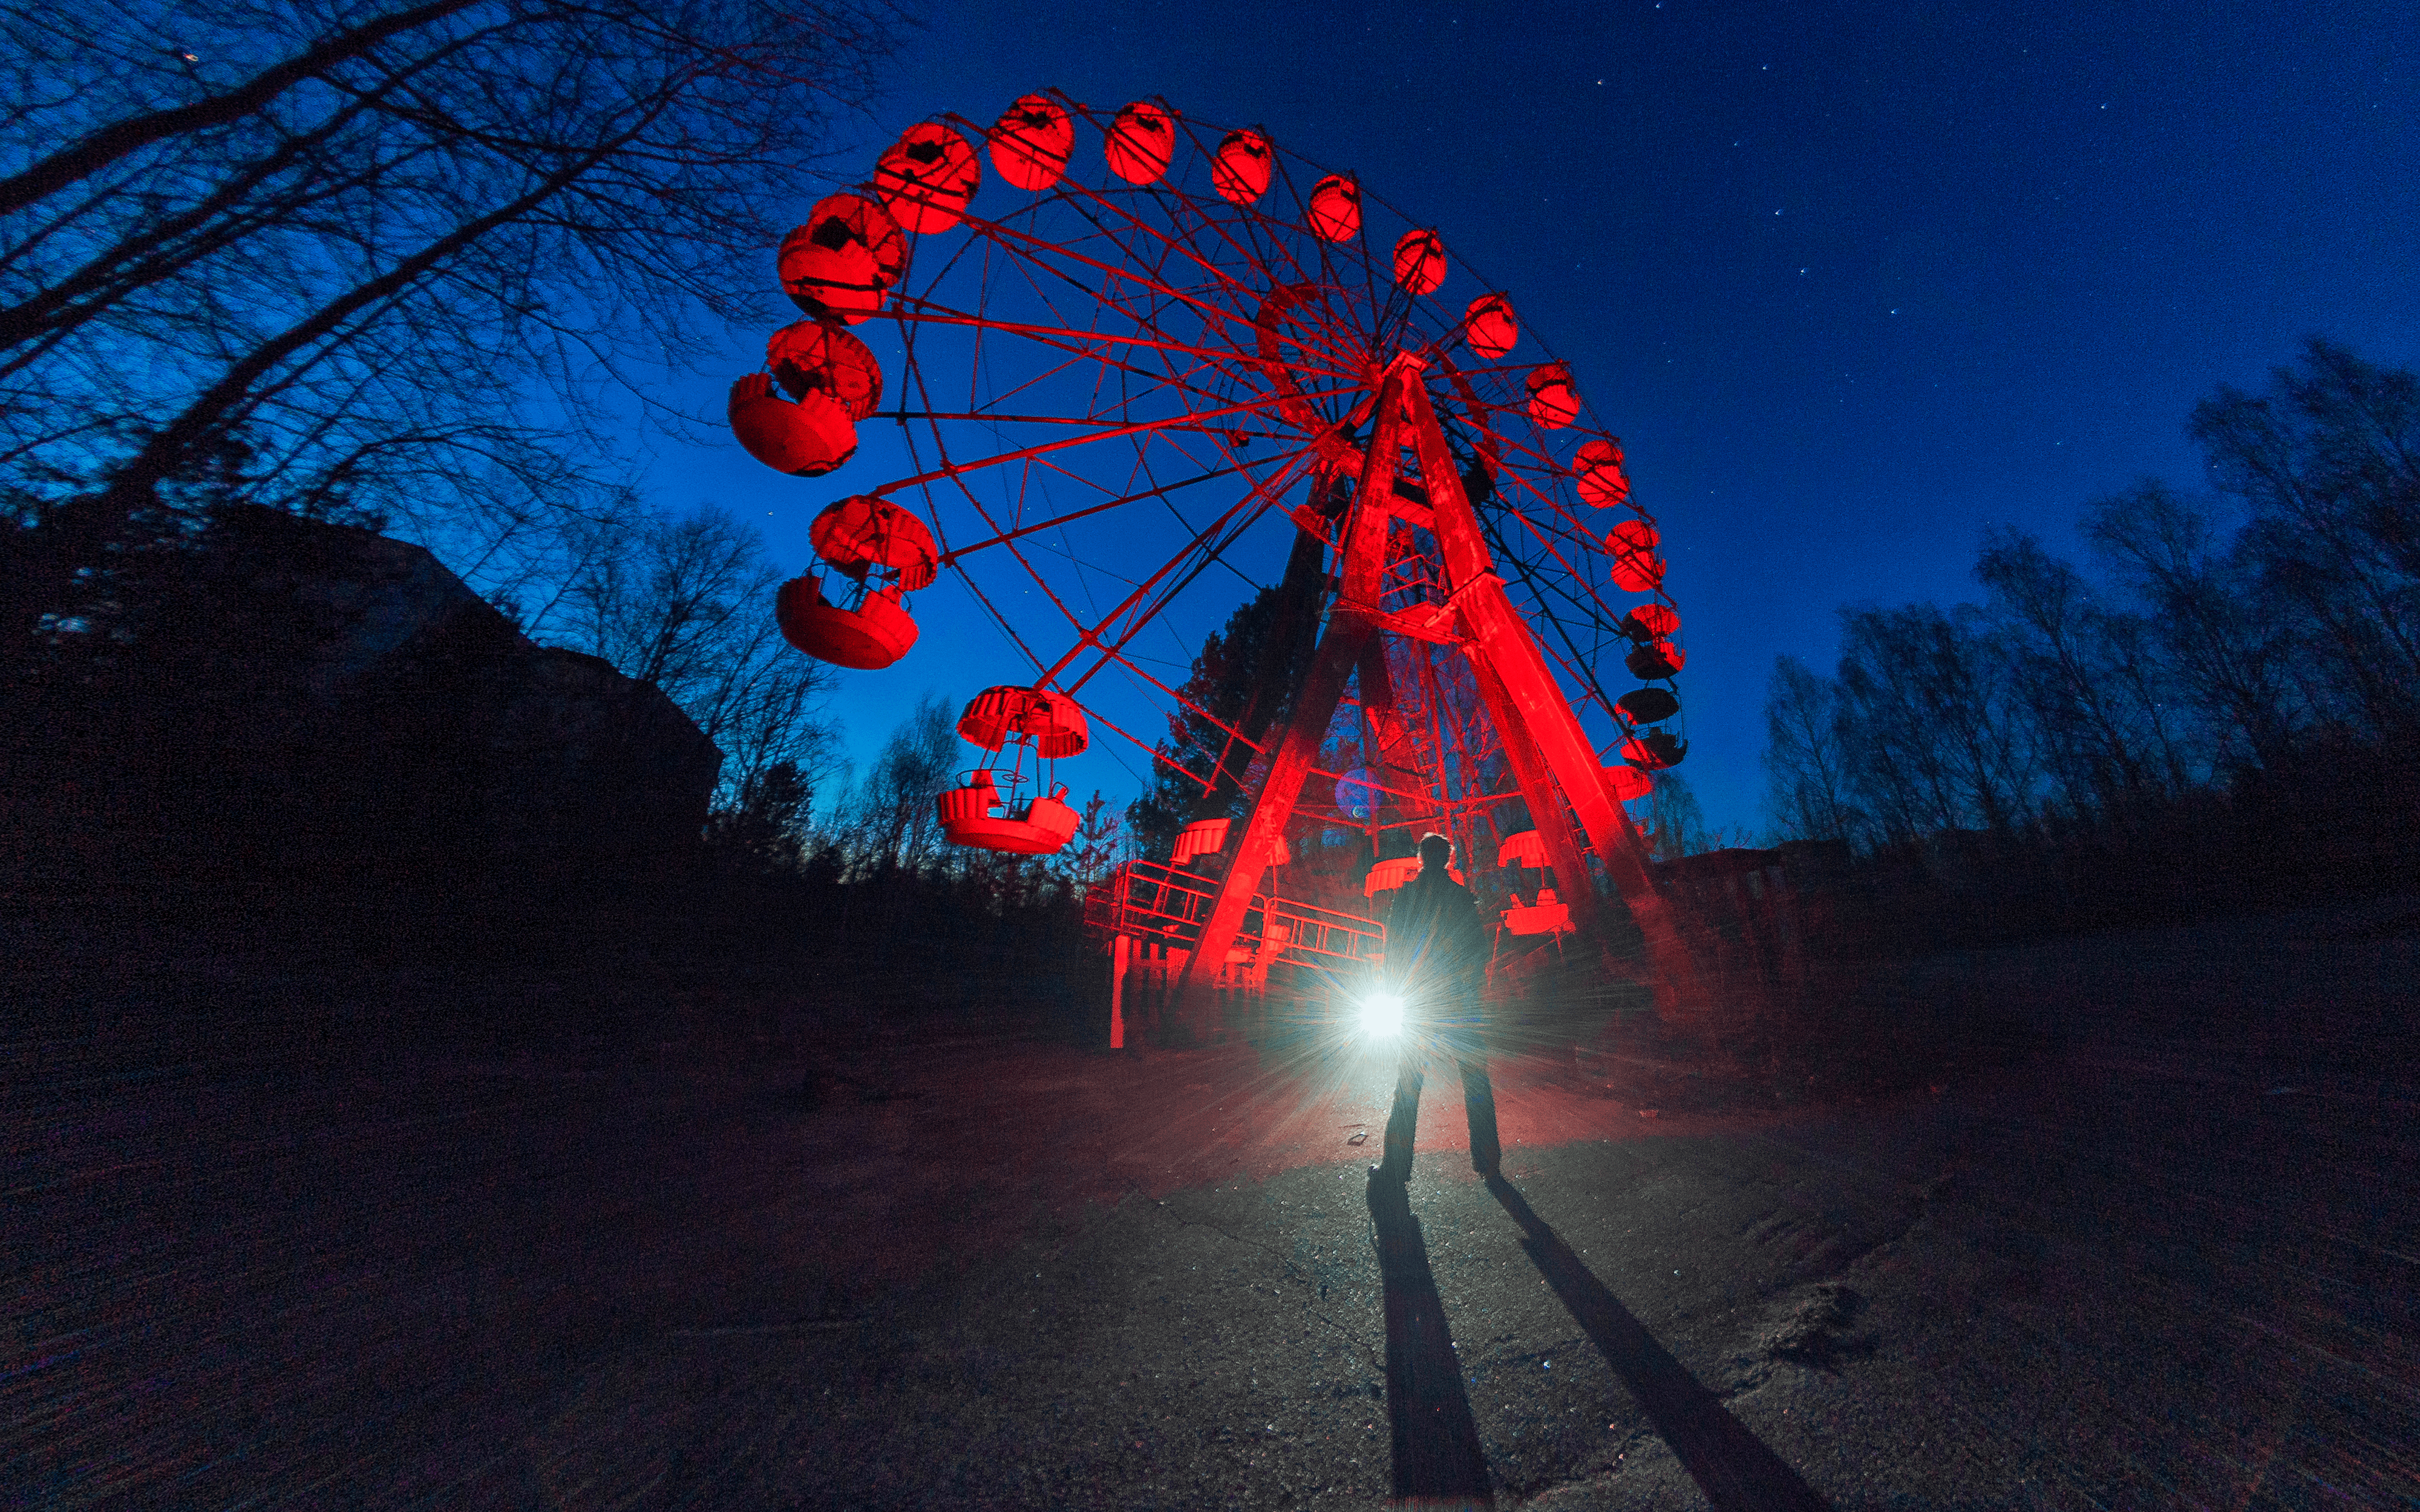 The Red Wheel of Pripyat